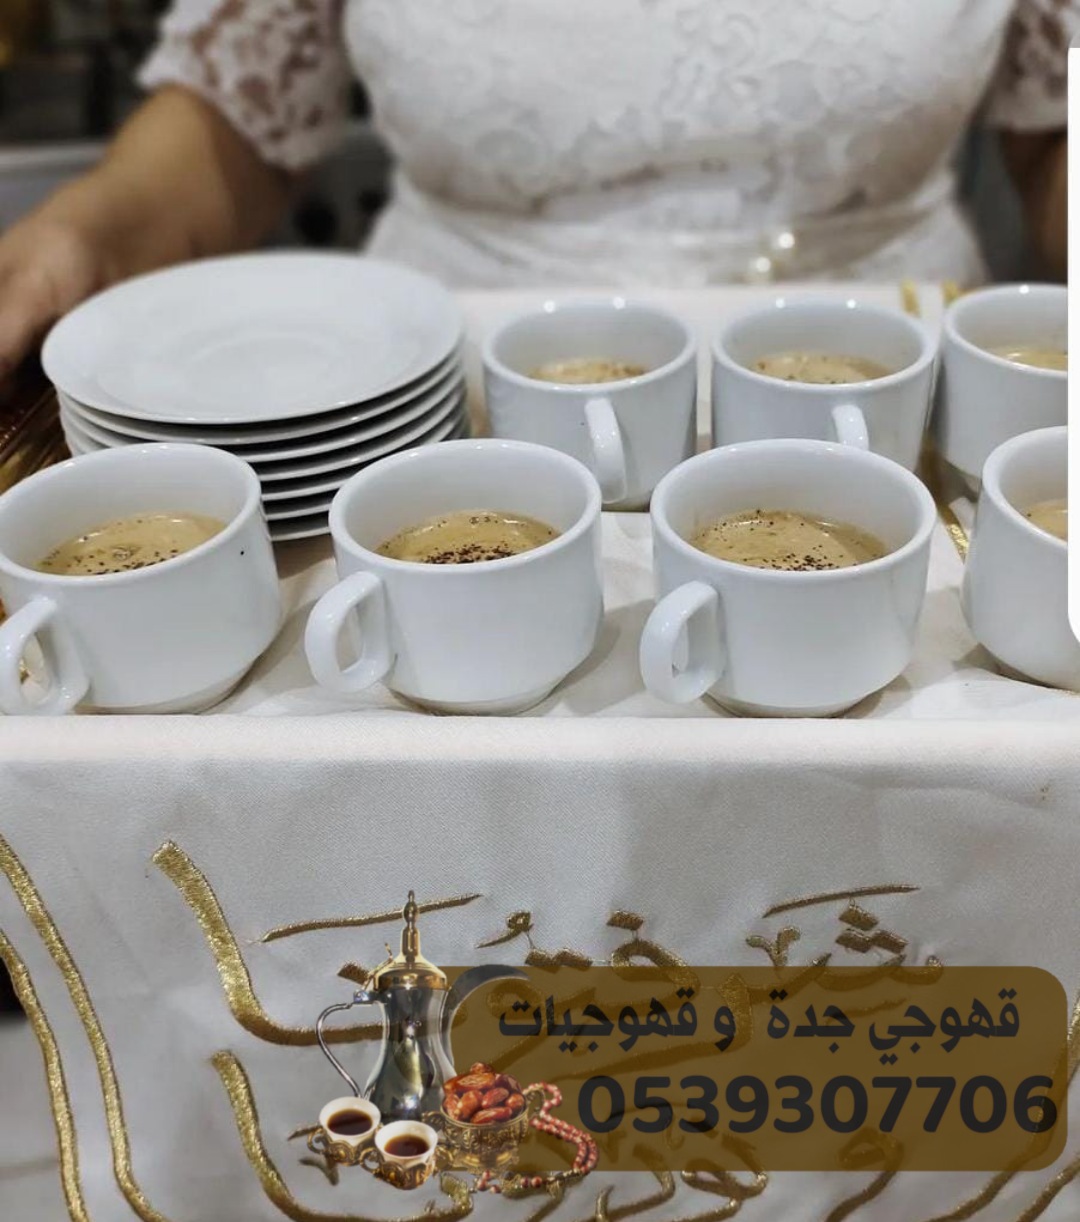 صبابين قهوة لإقامة حفلات و قهوجي في جدة 0539307706  170800977869232